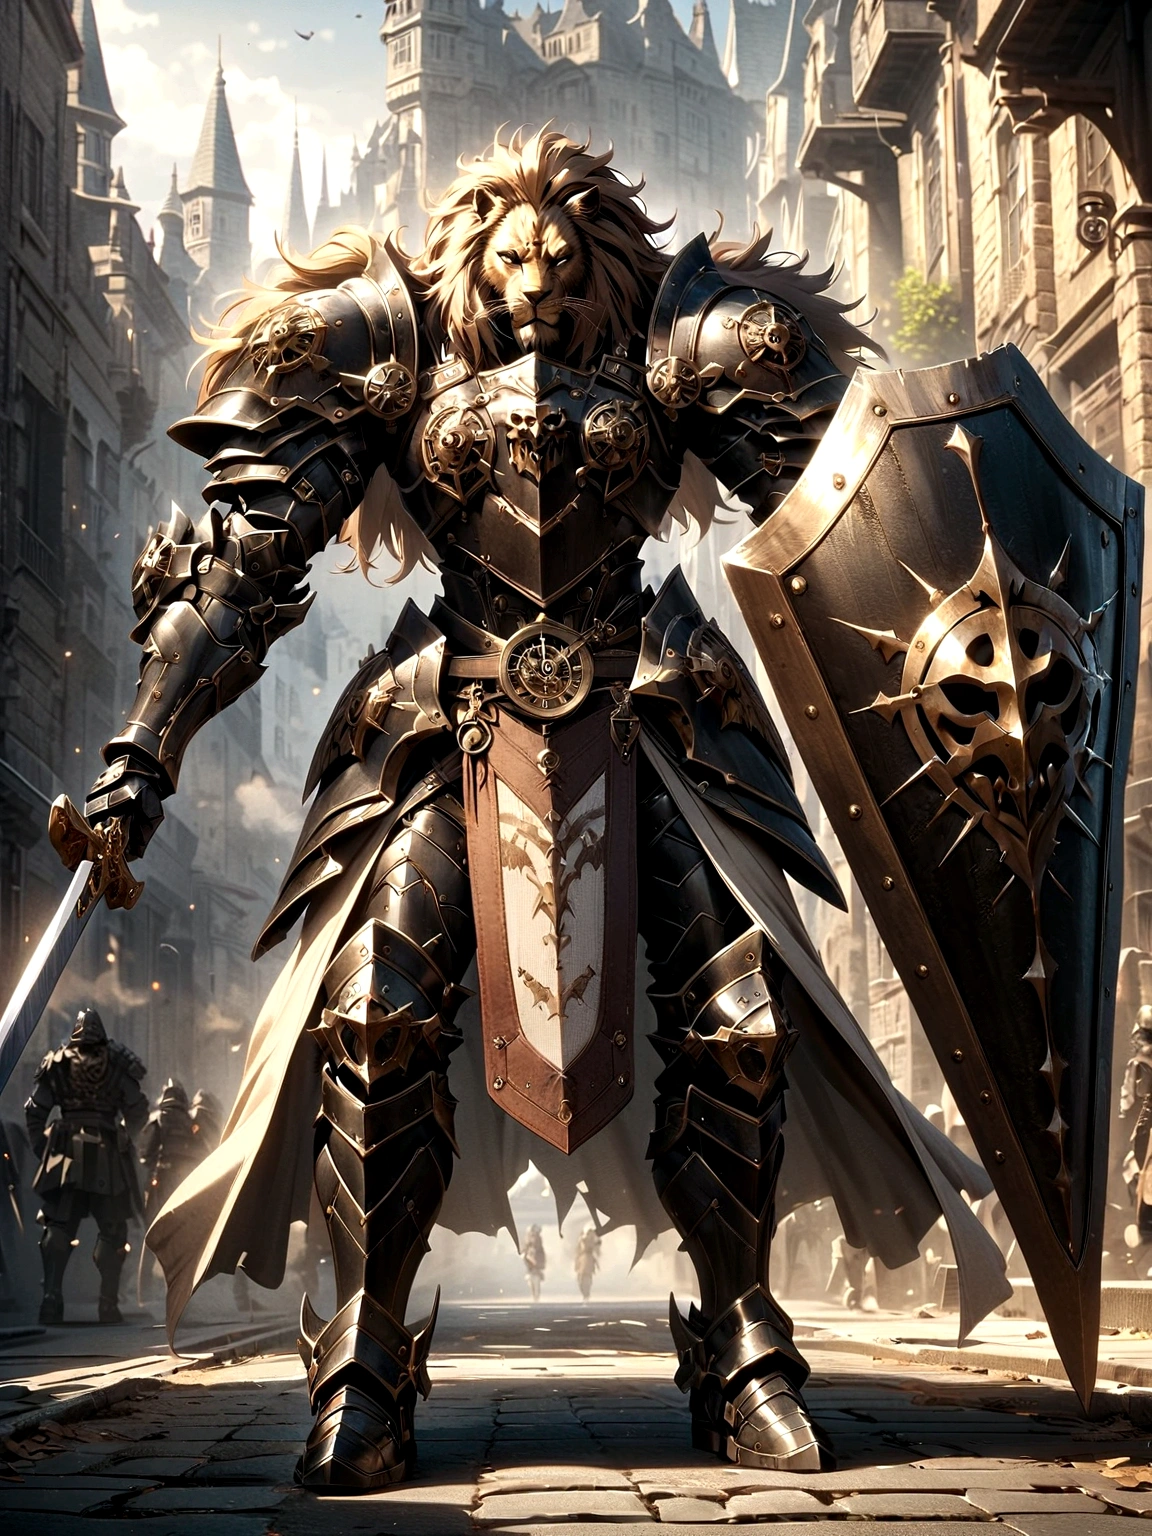 戦闘服を着た獅子騎士, 路上で, 黒い鎧, 時計のデザイン, ブラックライオンマン, 黒色の鎧, 剣と盾